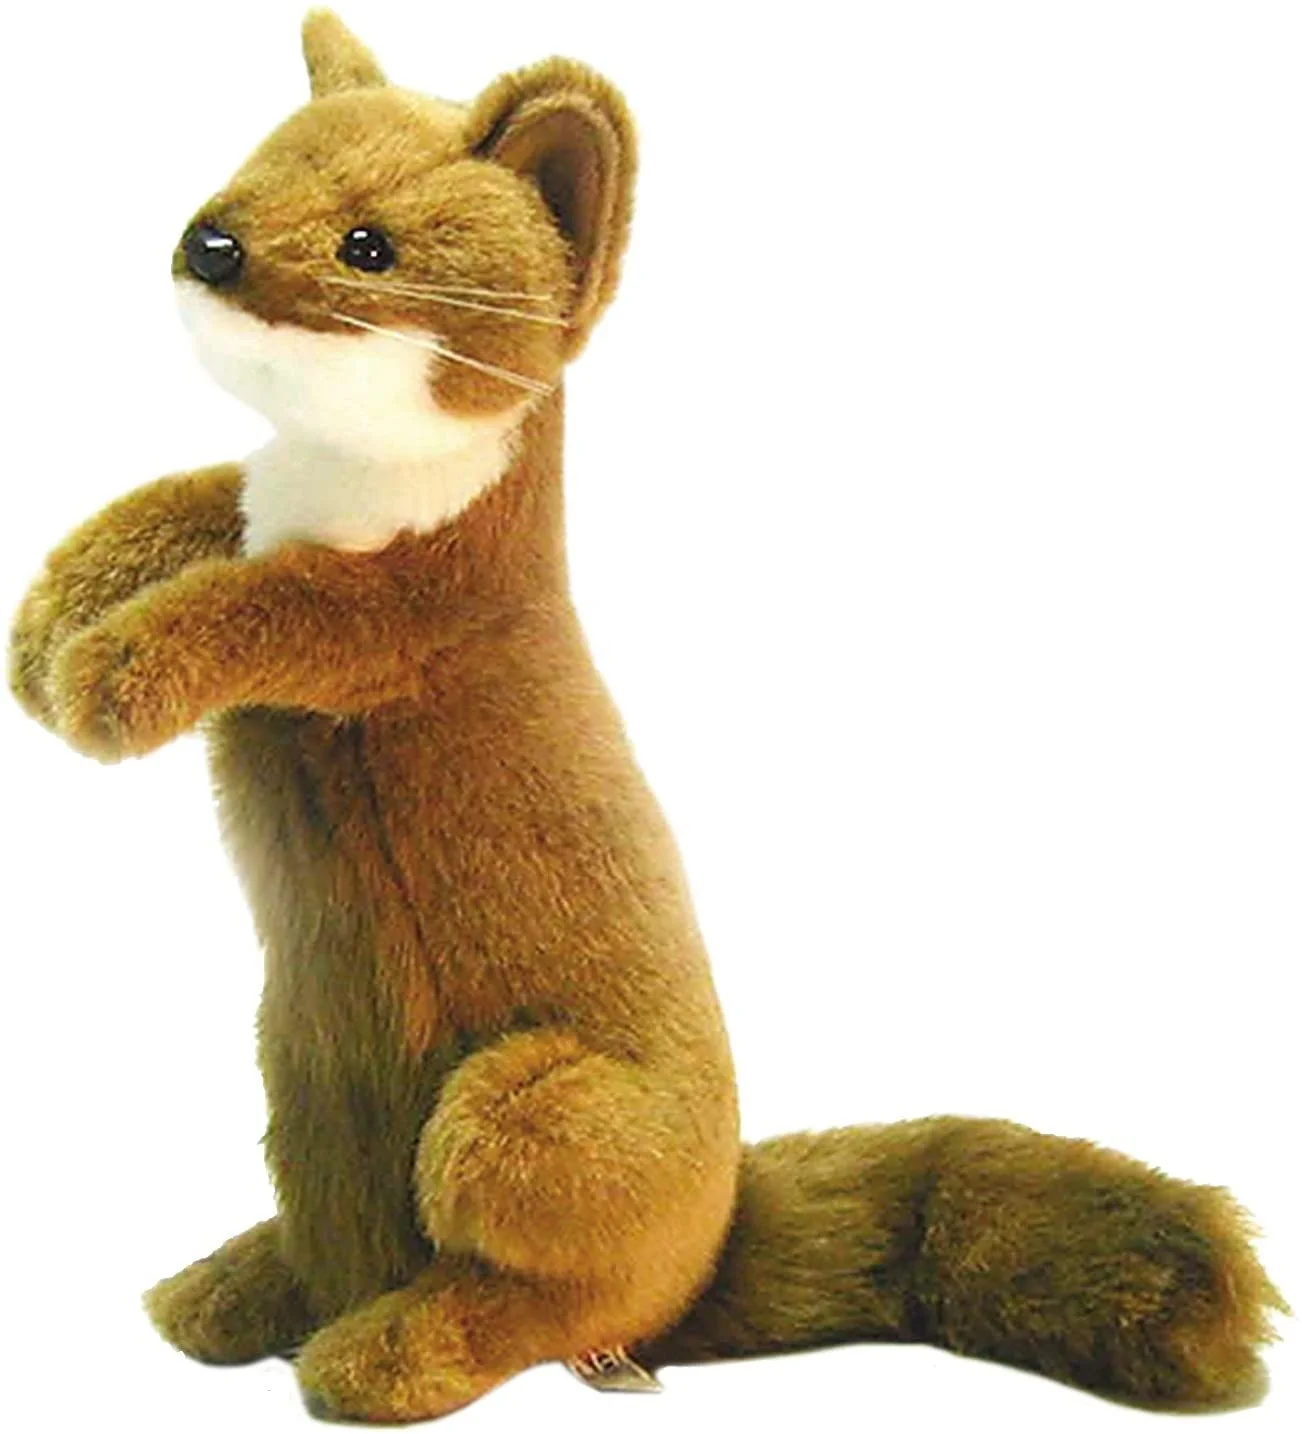 mongoose stuffed animal